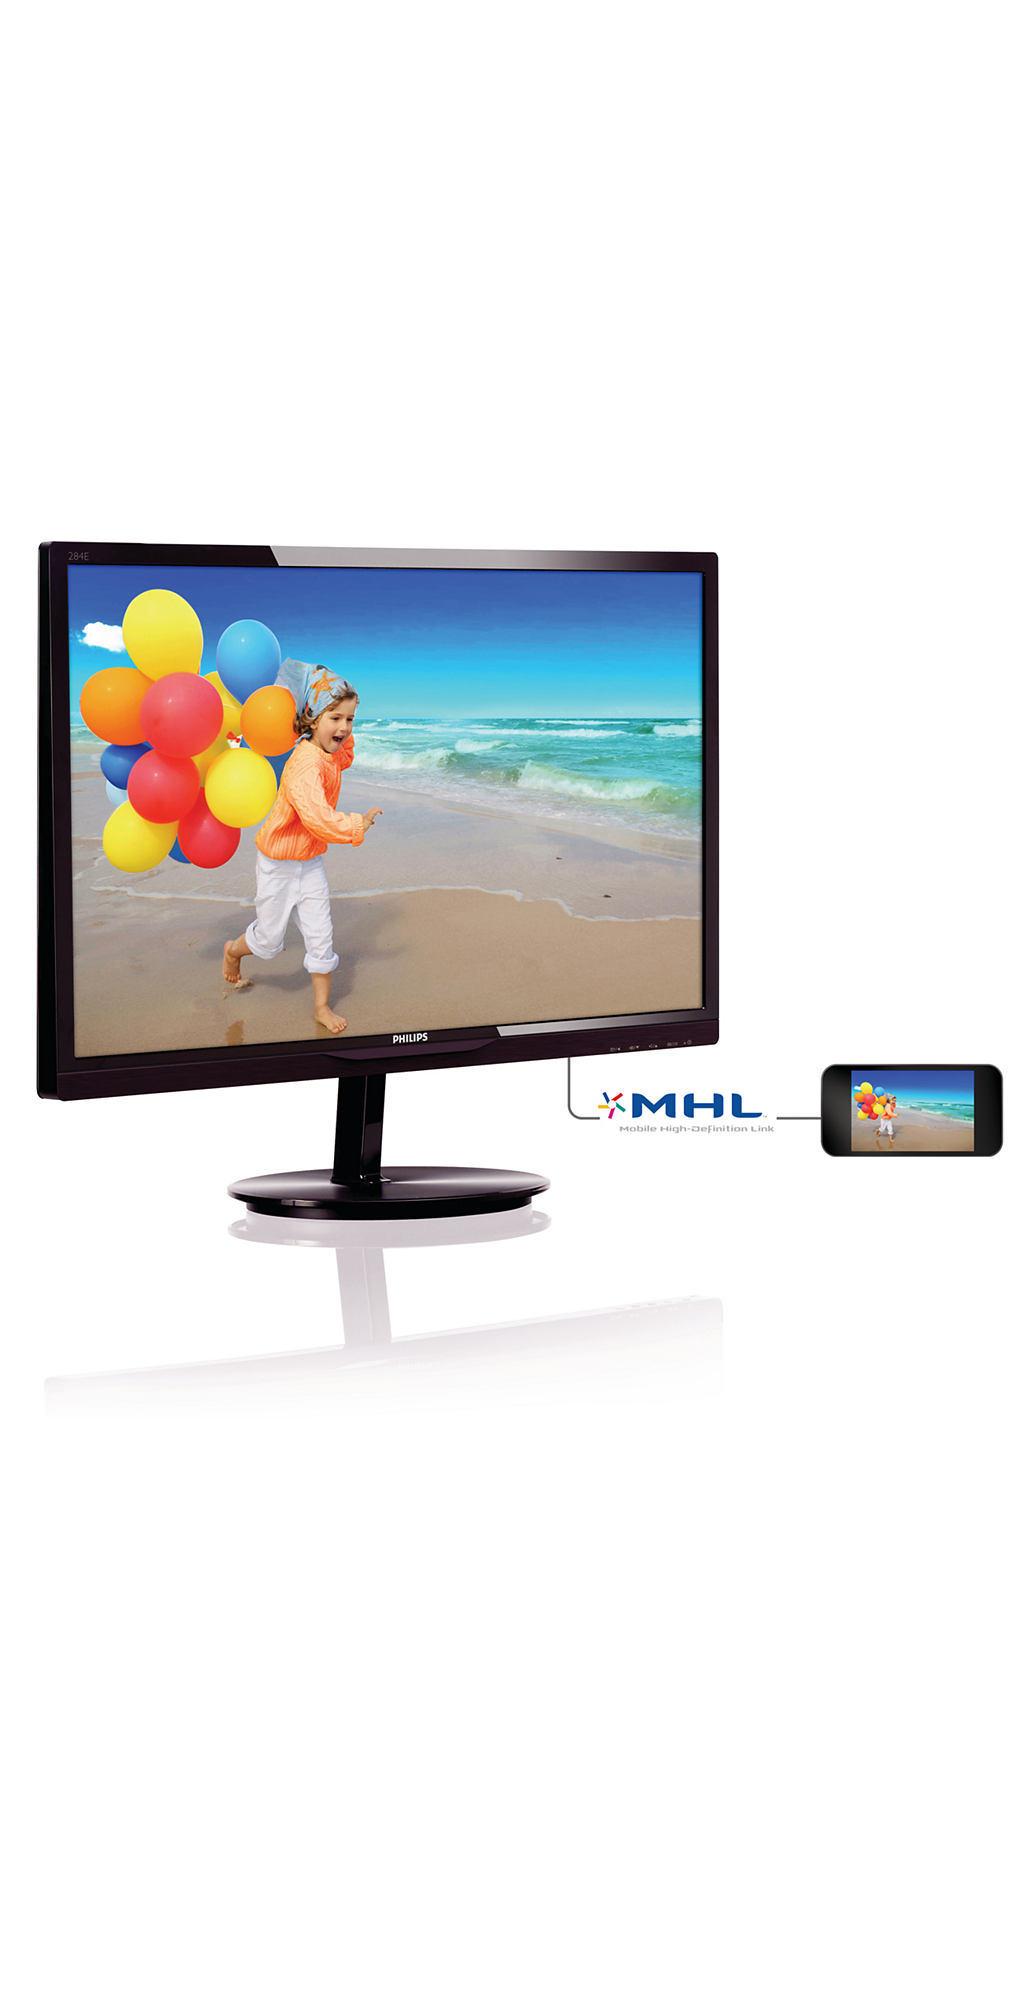 Immagine pubblicata in relazione al seguente contenuto: Philips introduce il monitor 284E5QHAD con tecnologia Mobile HD Link | Nome immagine: news20619_Philips-284E5QHAD_1.jpg